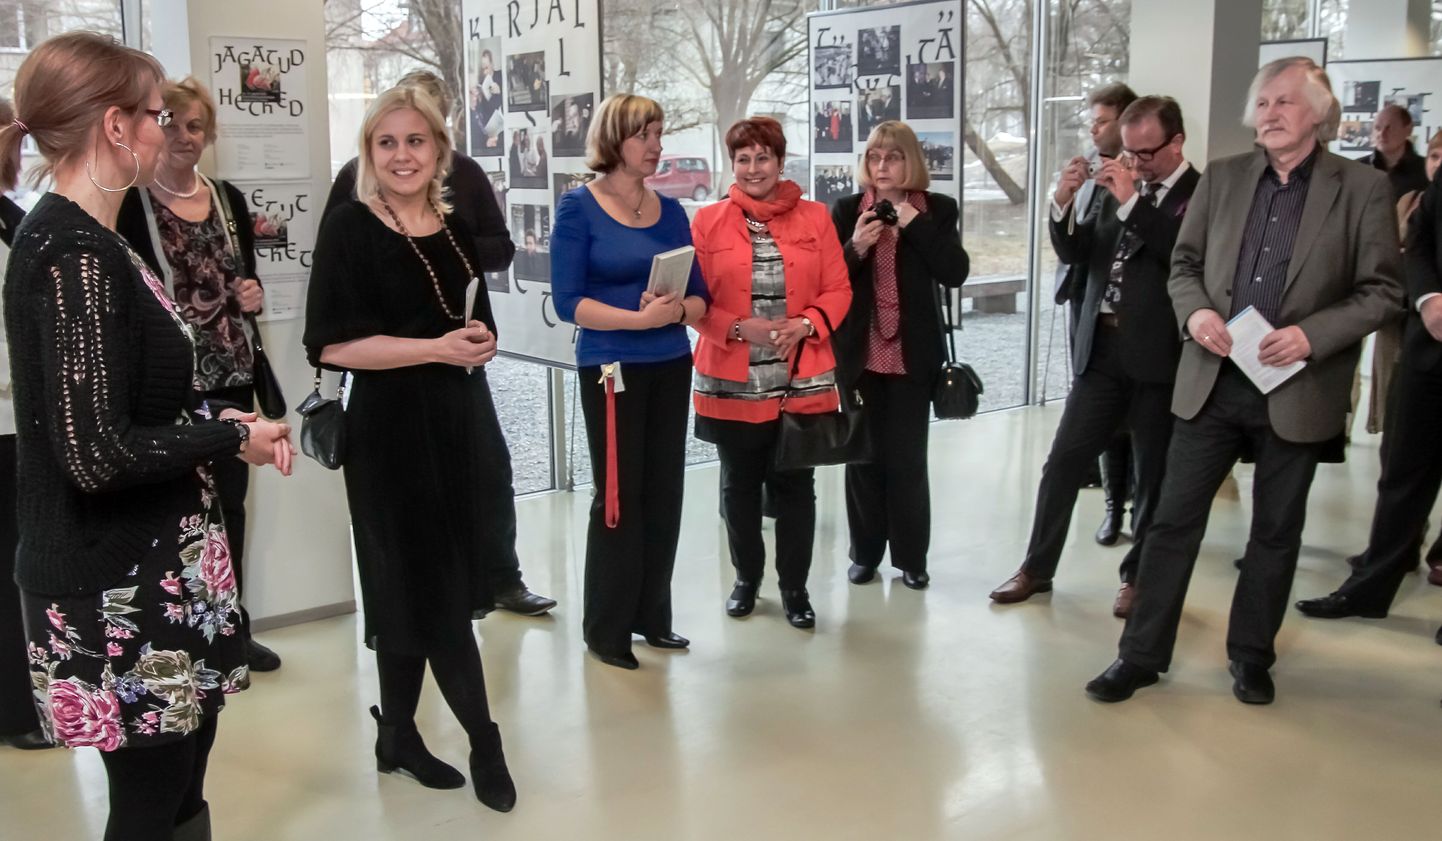 Eile pärastlõunal avati Pärnu keskraamatukogus Eesti ja Soome suhteid kajastav fotonäitus “Jagatud hetked”, mis on valminud Eesti ja Soome iseseisvuse 95 aasta juubeliks.